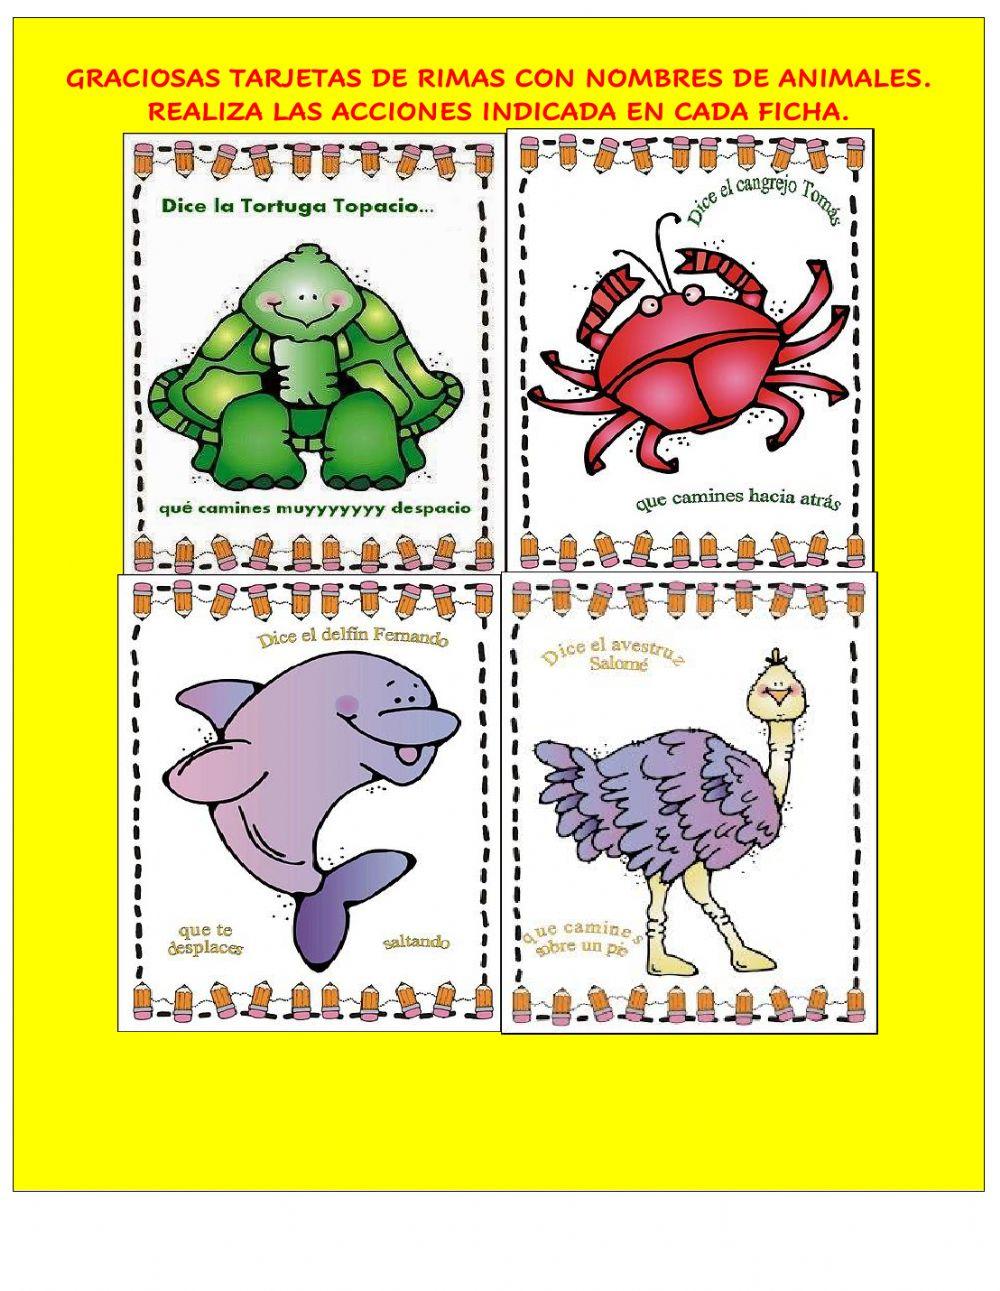 Graciosas tarjetas de rimas con nombres de animales.